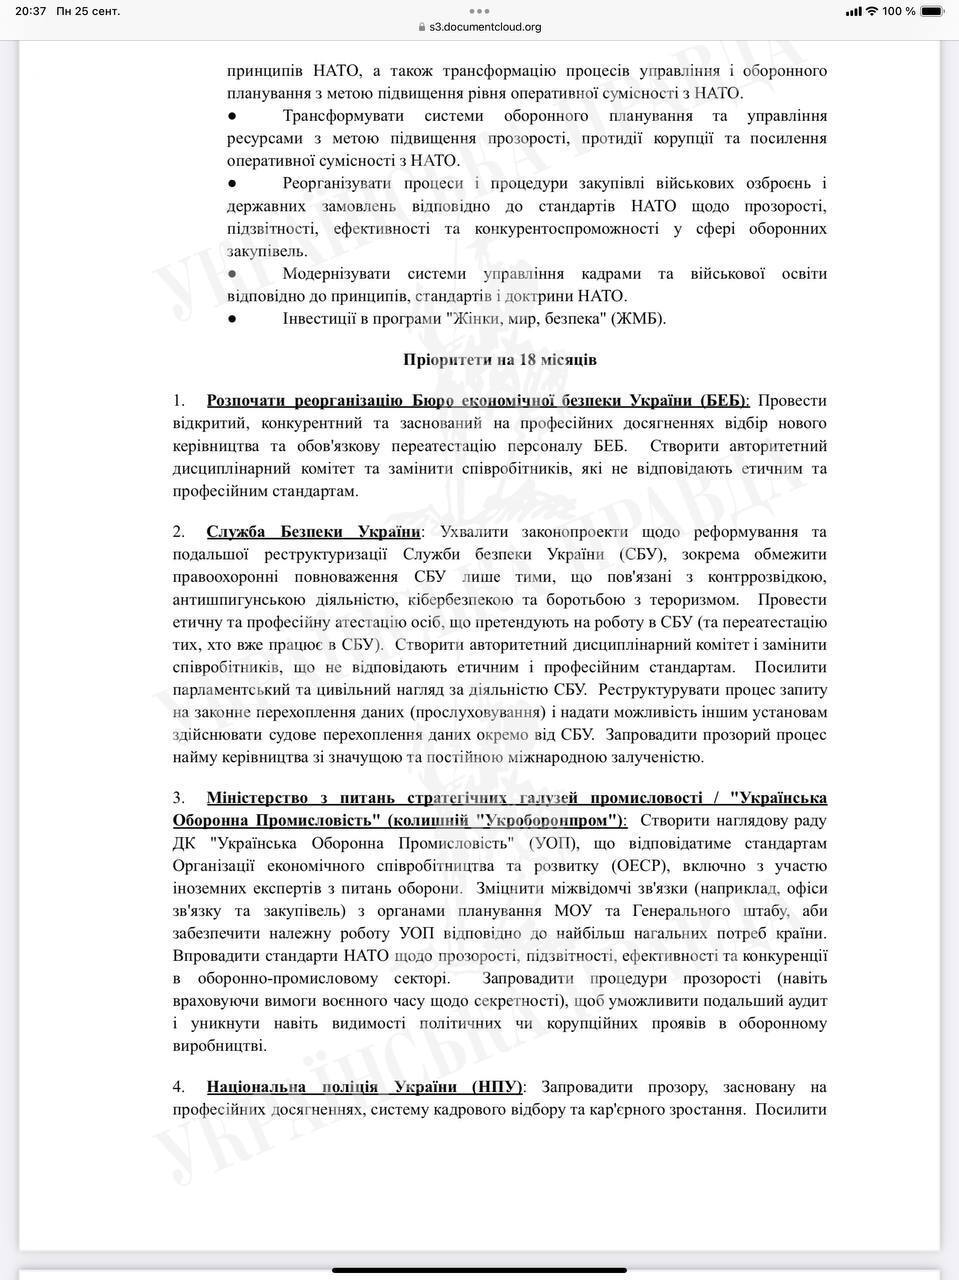 Українська влада отримала лист із переліком реформ, які має зробити для подальшого отримання допомоги від США: подробиці